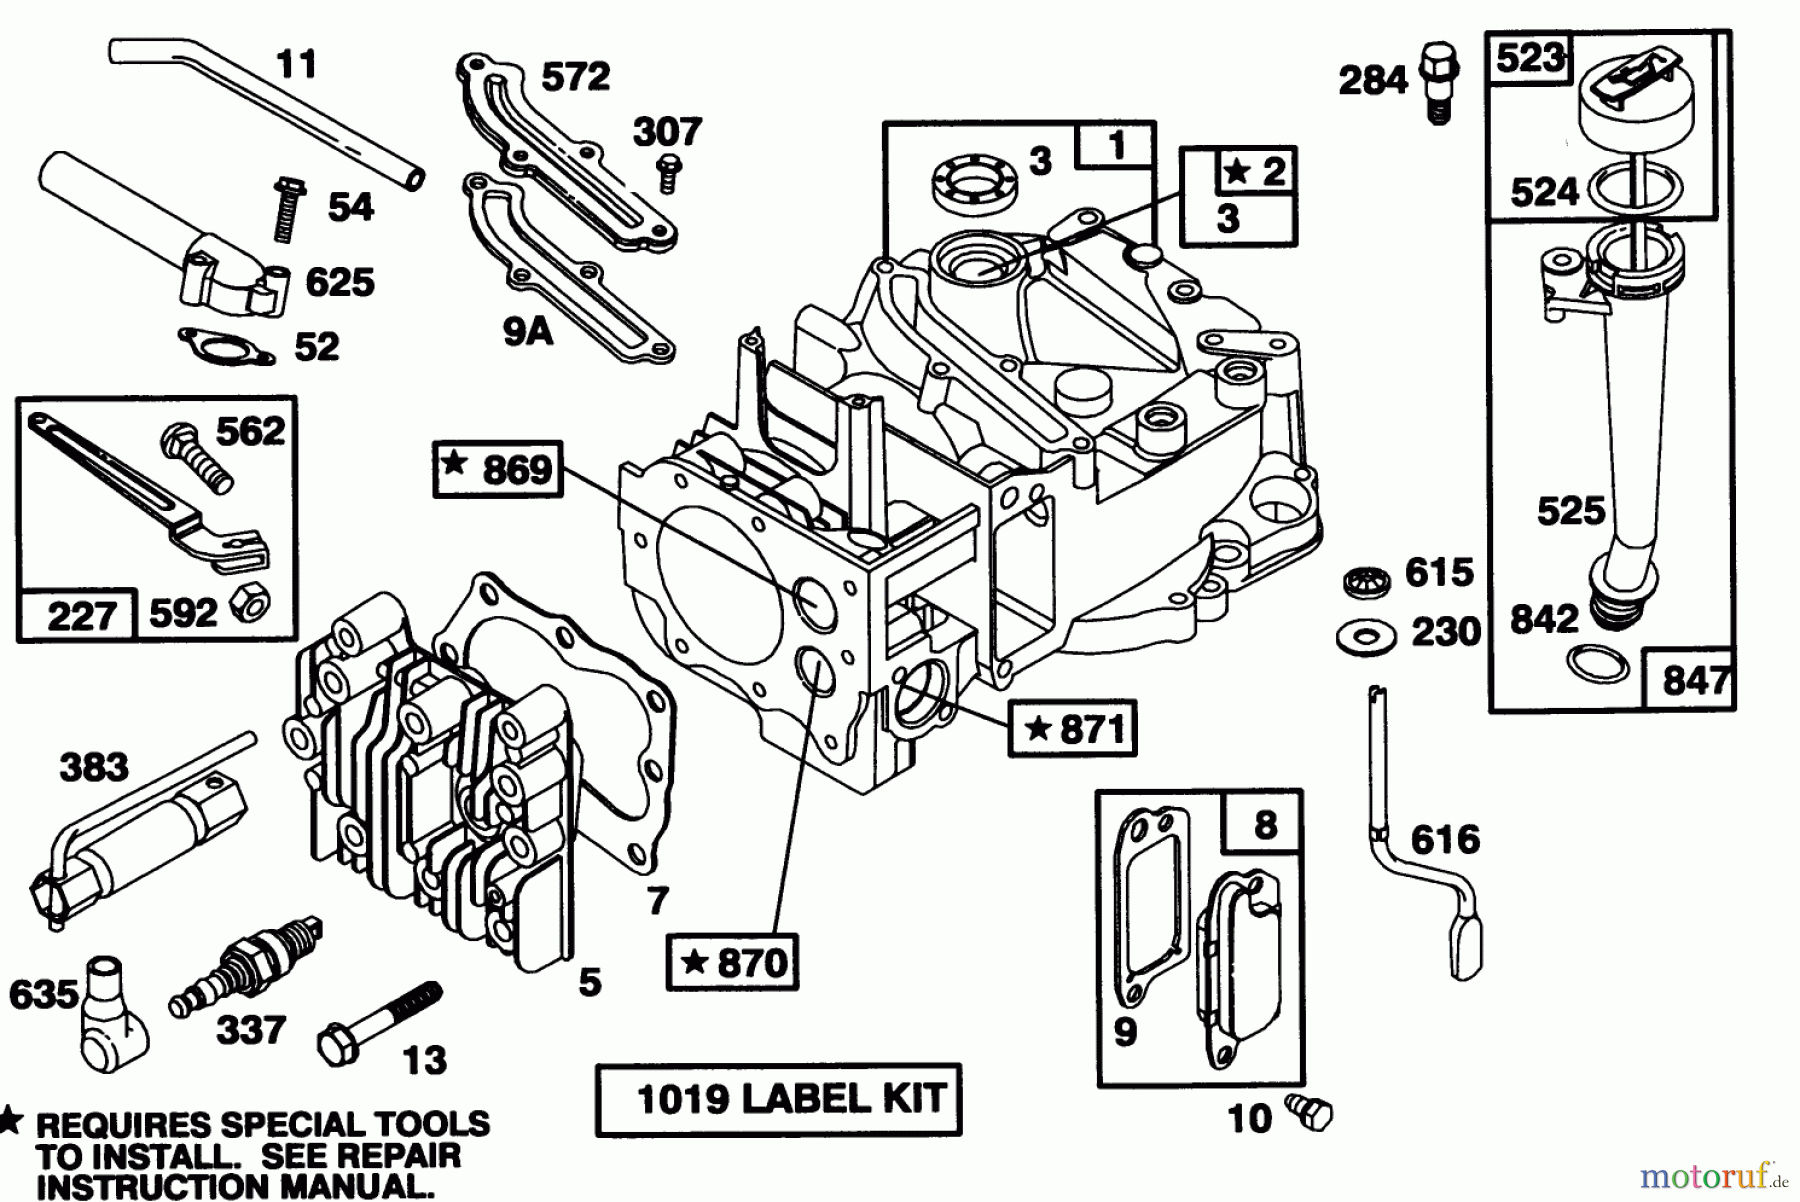  Toro Neu Mowers, Walk-Behind Seite 1 20434 - Toro Recycler II, 1994 (4900001-4999999) ENGINE BRIGGS & STRATTON MODEL 122702-3171-01 #1